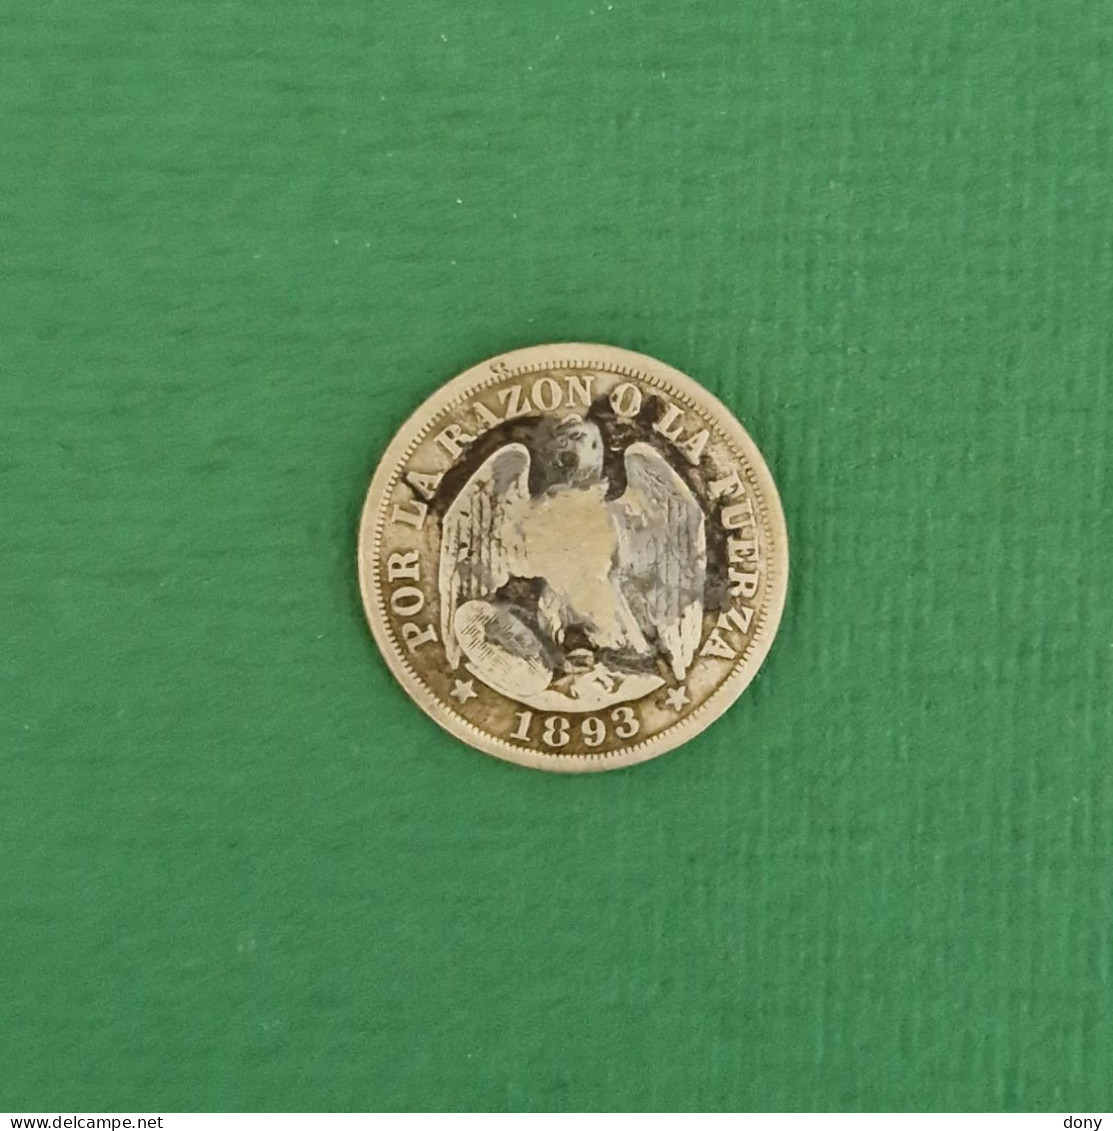 Moneda 20 Cents, Centavos De Plata 1893 República De Chile. - Chile